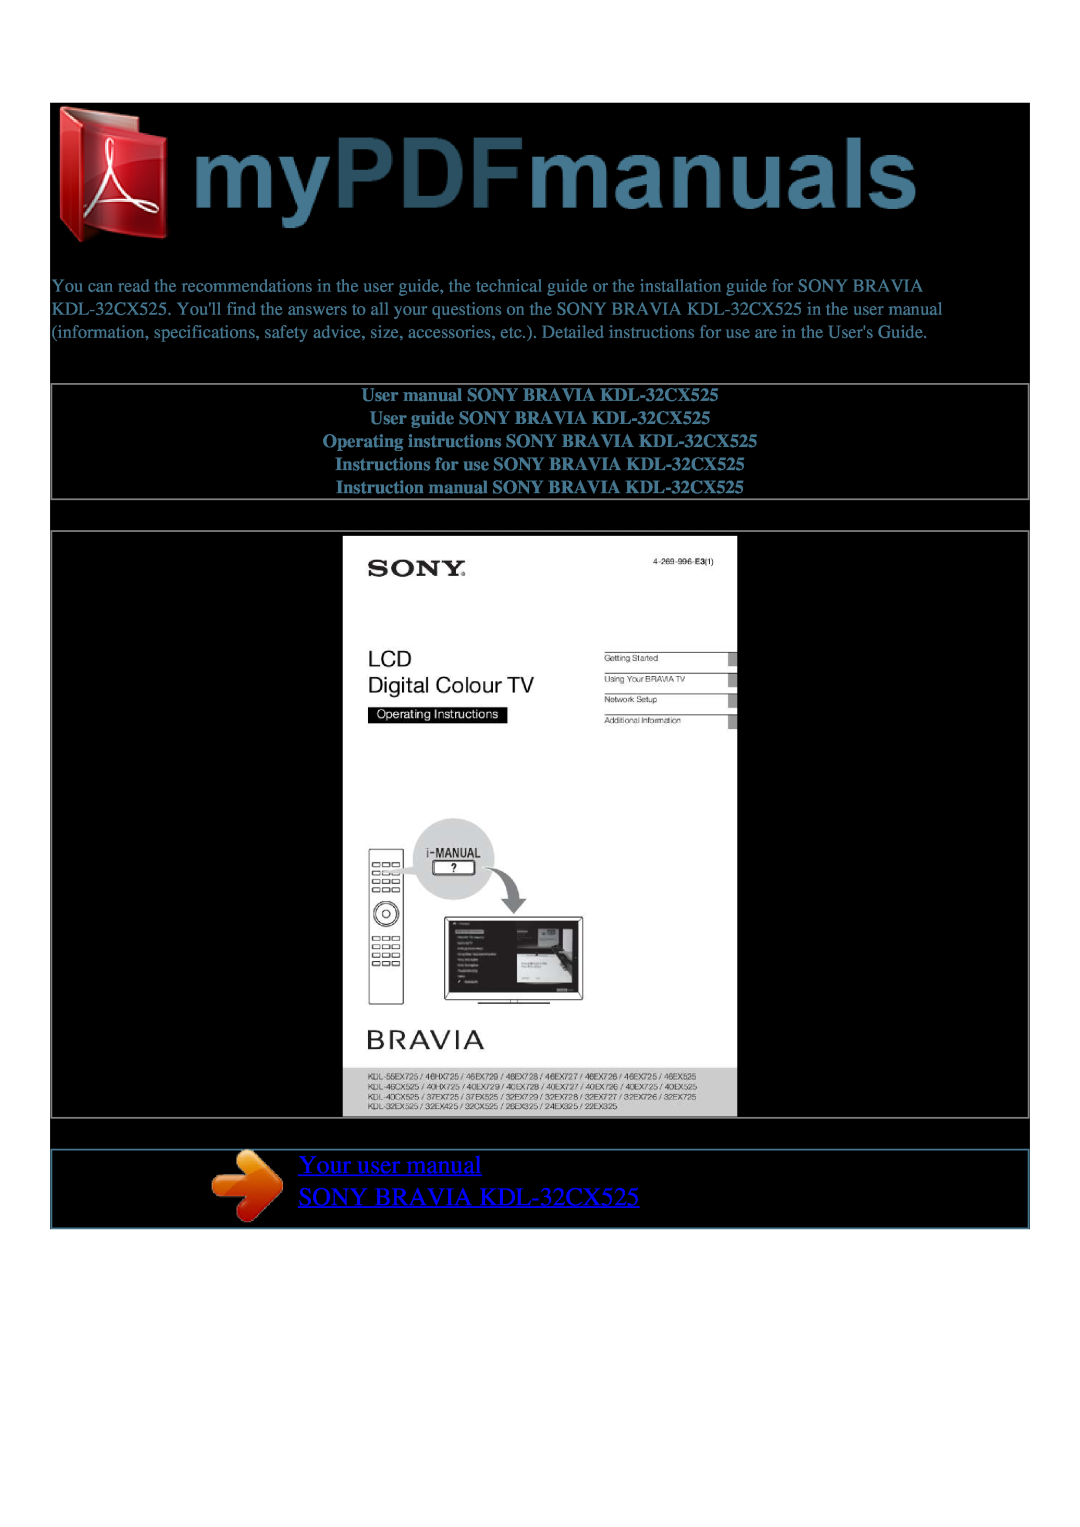 Sony user manual Your user manual SONY BRAVIA KDL-32CX525 